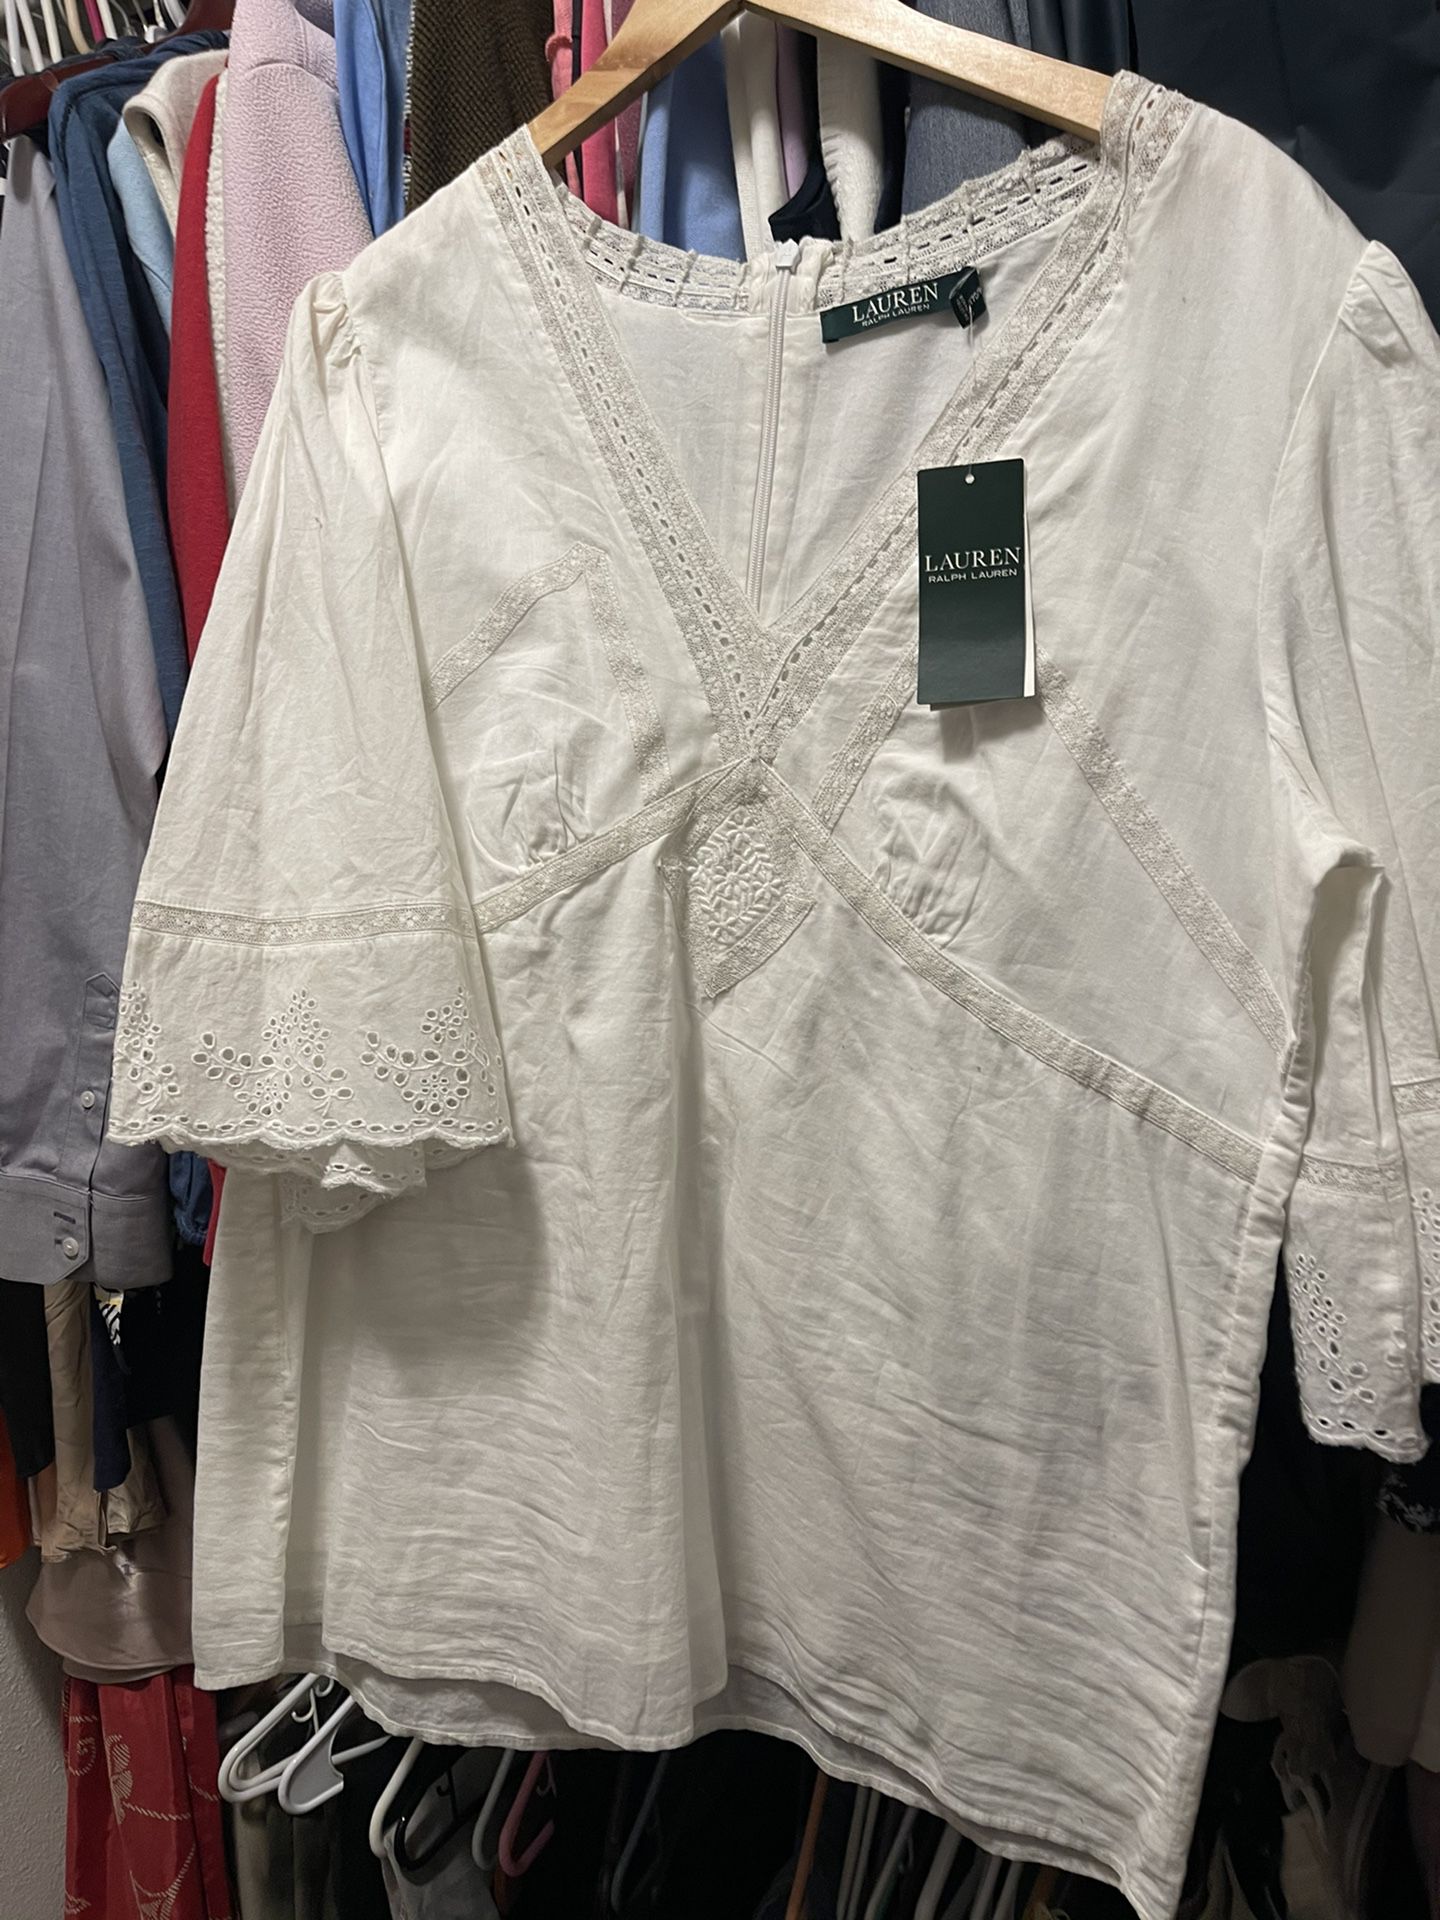 Brand New  W/tags- Ralph Lauren Women’s Dress Up Blouse (shirt)  Retails $115